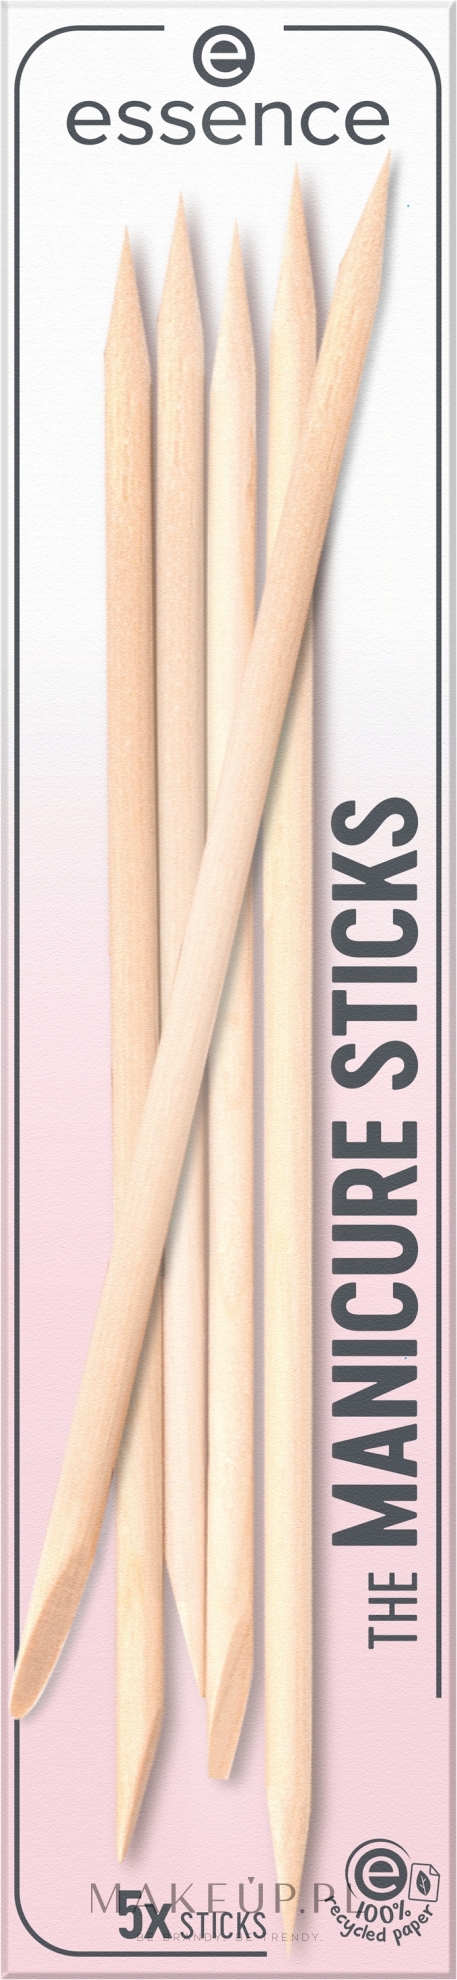 Patyczki pomarańczowe, 5 szt. - Essence Nail Care The Manicure Sticks — Zdjęcie 5 szt.